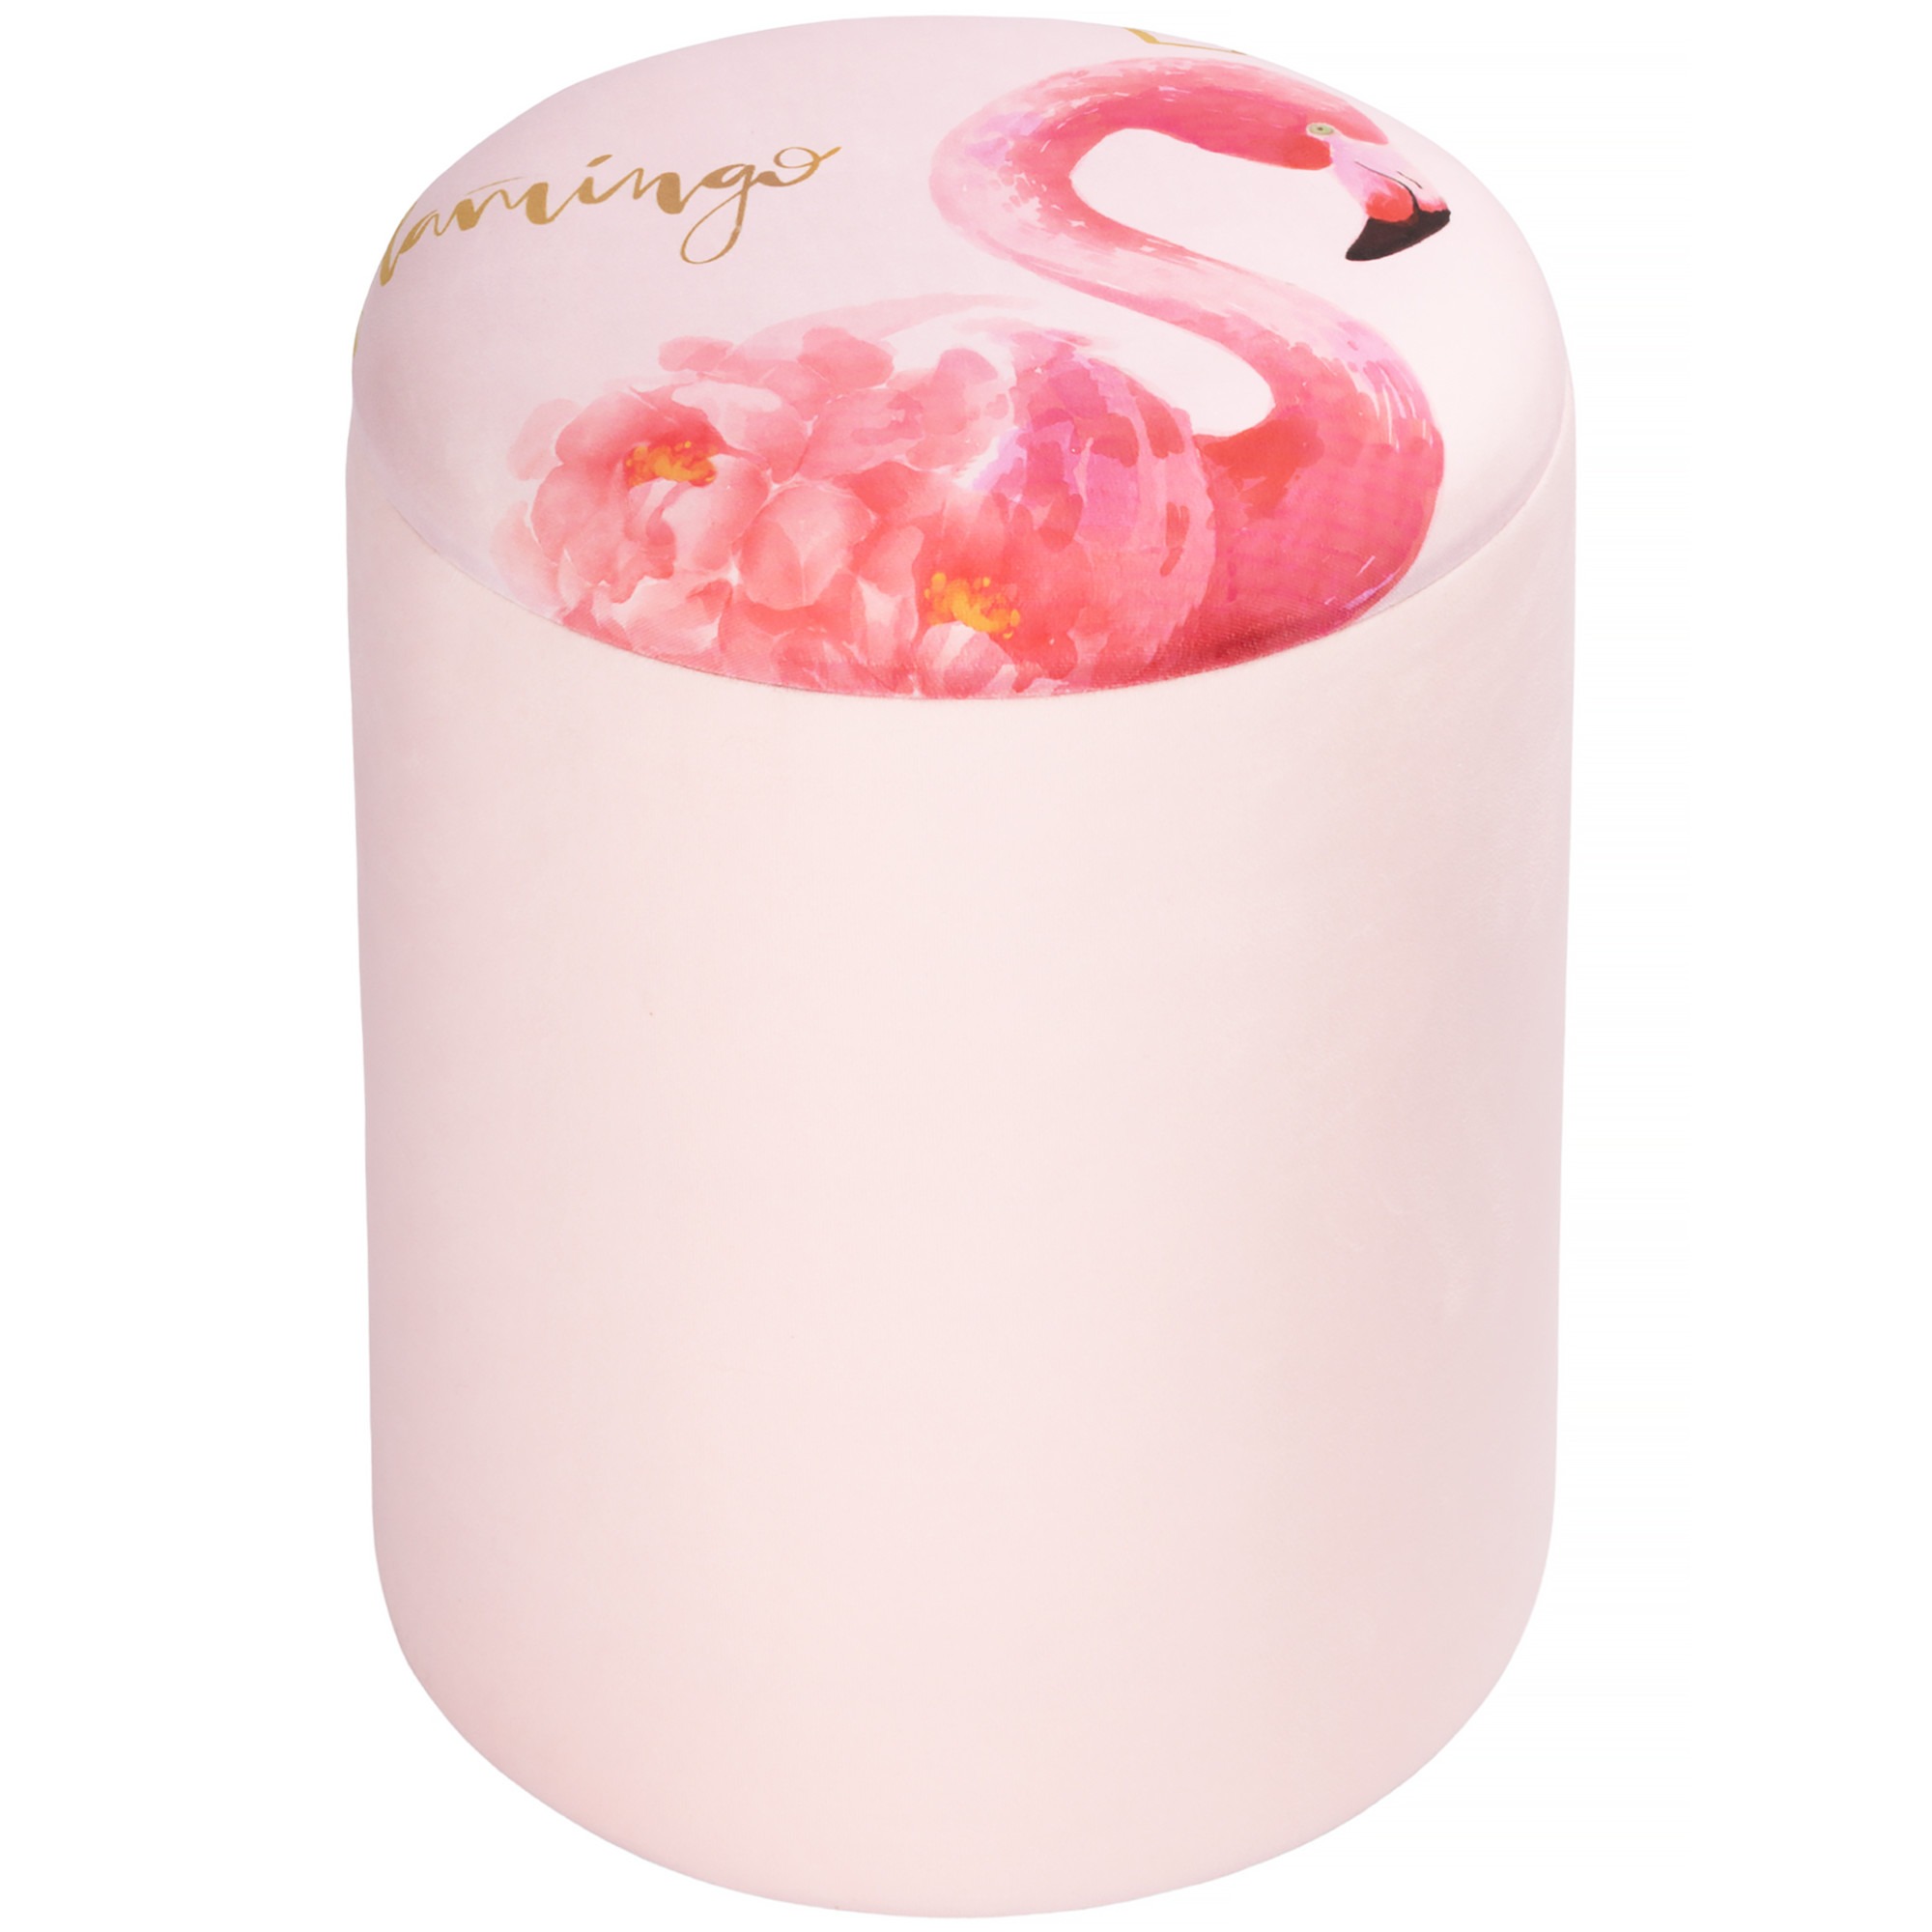 Пуф с крышкой Glasar фламинго 35х35х42 см ваза с крышкой glasar фламинго 18x18x29 см